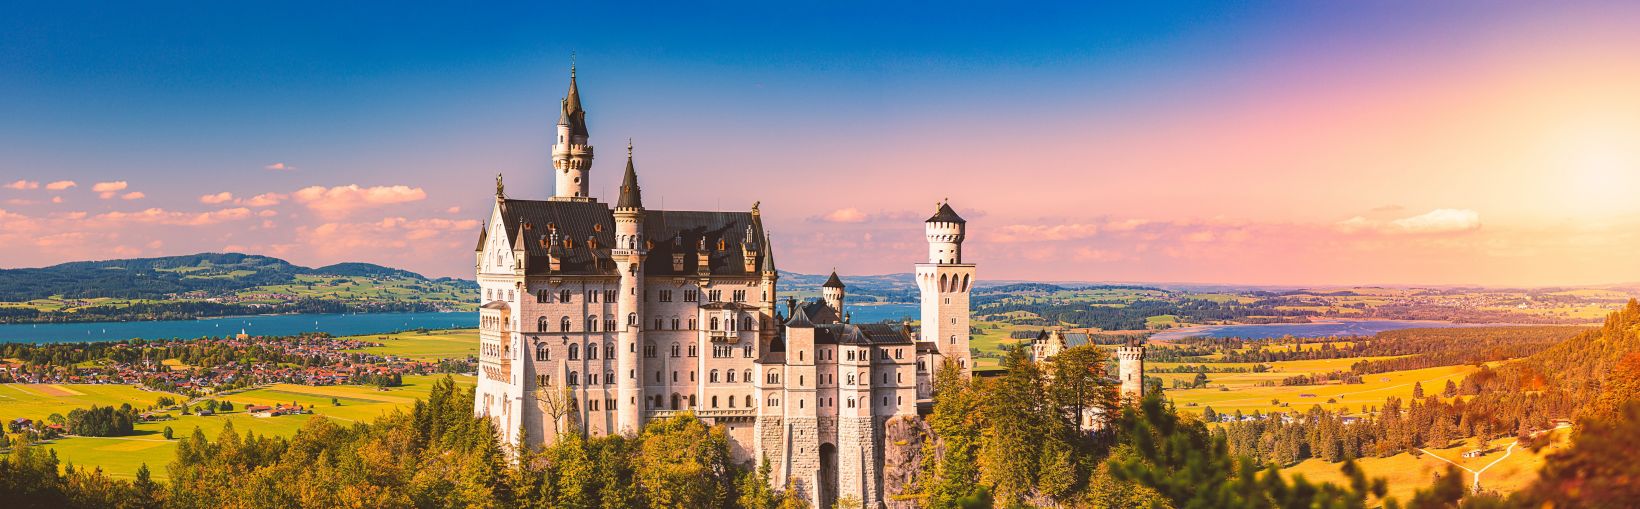 Przepiękny widok znanego na całym świecie zamku Neuschwanstein, dziewiętnastowiecznej budowli w stylu neoromańskim wzniesionej dla króla Ludwika II na poszarpanym urwisku w okolicach Fussen, w południowej Bawarii w Niemczech